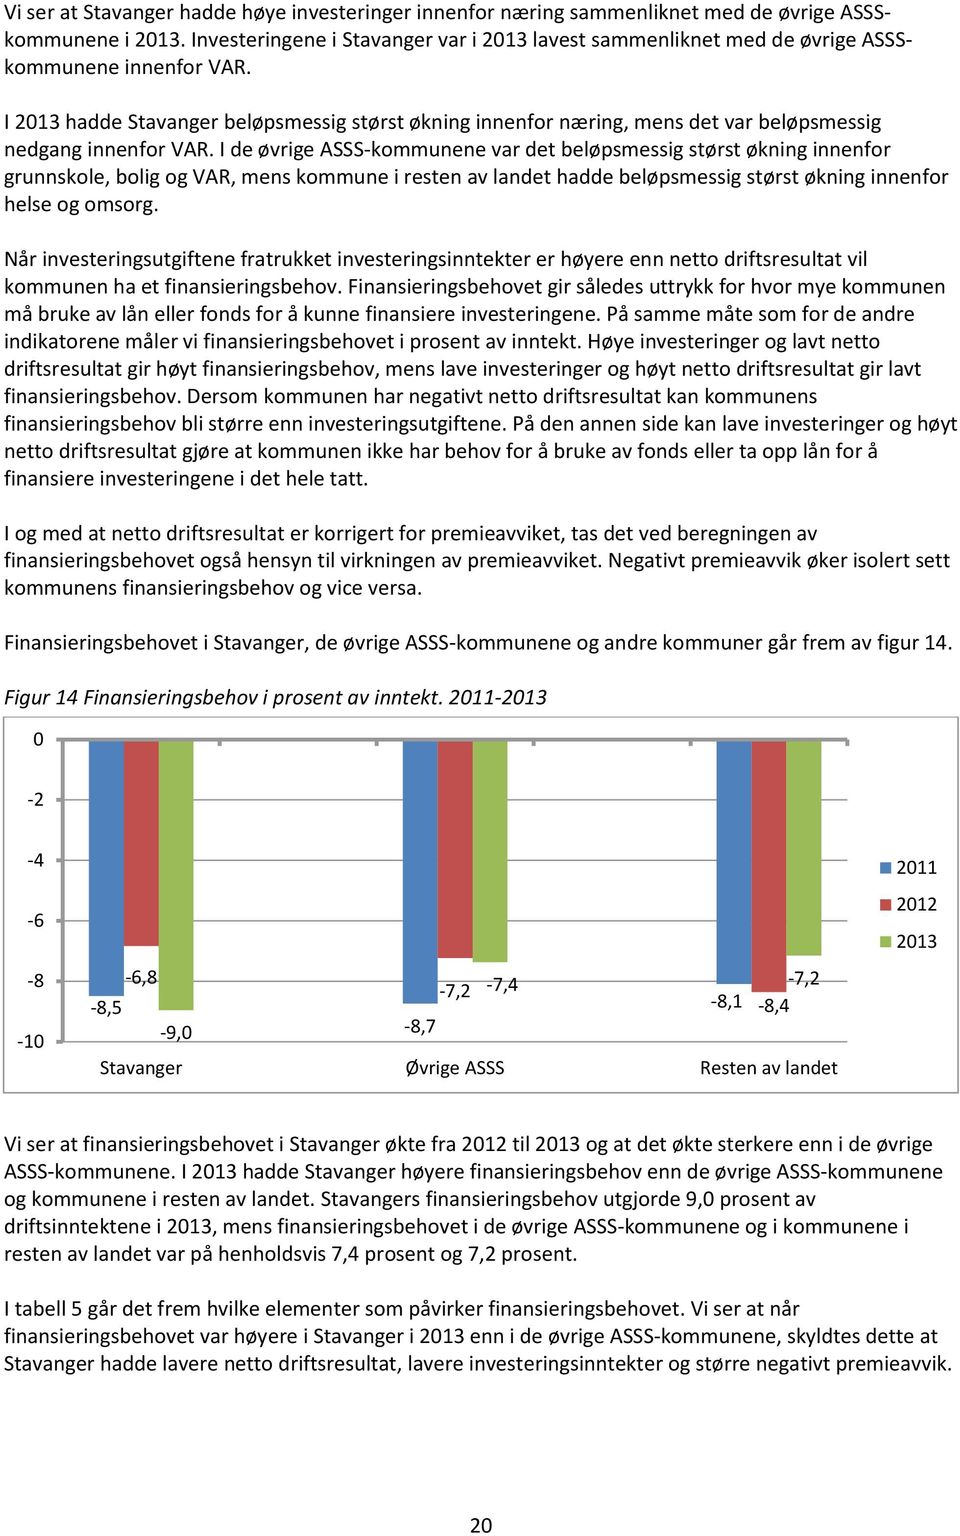 I 2013 hadde Stavanger beløpsmessig størst økning innenfor næring, mens det var beløpsmessig nedgang innenfor VAR.